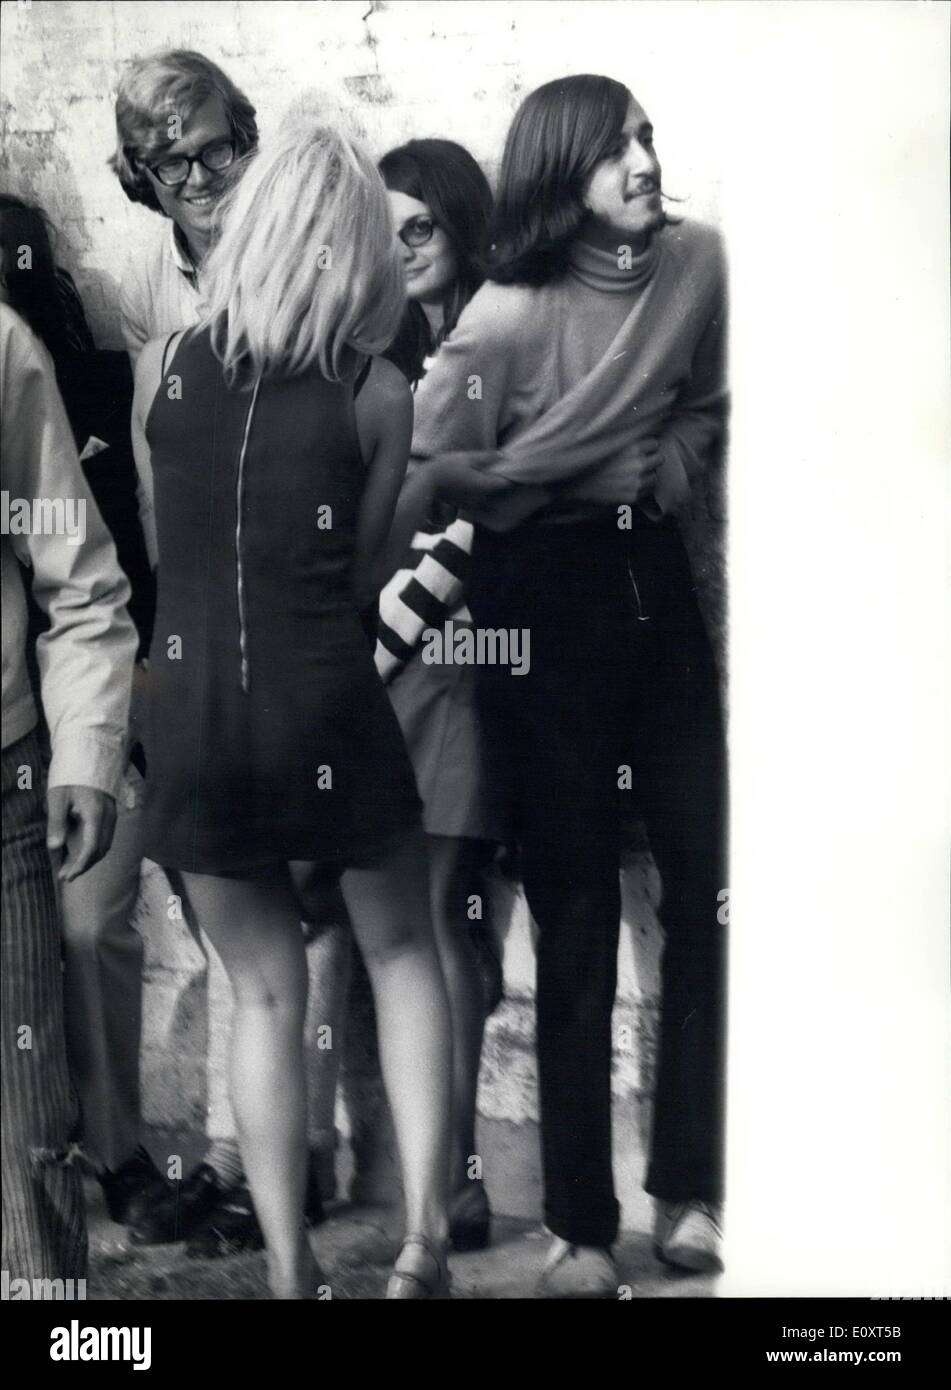 Sept. 09, 1967 - der Händler von den Geschäften aufgestellt nahe dem spanischen Platz und Trinita dei Monti, protestierte der Rom Behörden zur Ursache für die zahlreichen '' lange Haare '', die auf der Stufe zu bleiben aber die '' lange Haare '' habe kam wieder mehr zahlreiche weil ein Film an der Schritt arbeitet und die '' lange Haare '' und ihre Mädchen die Hauptakteure sind! Stockfoto